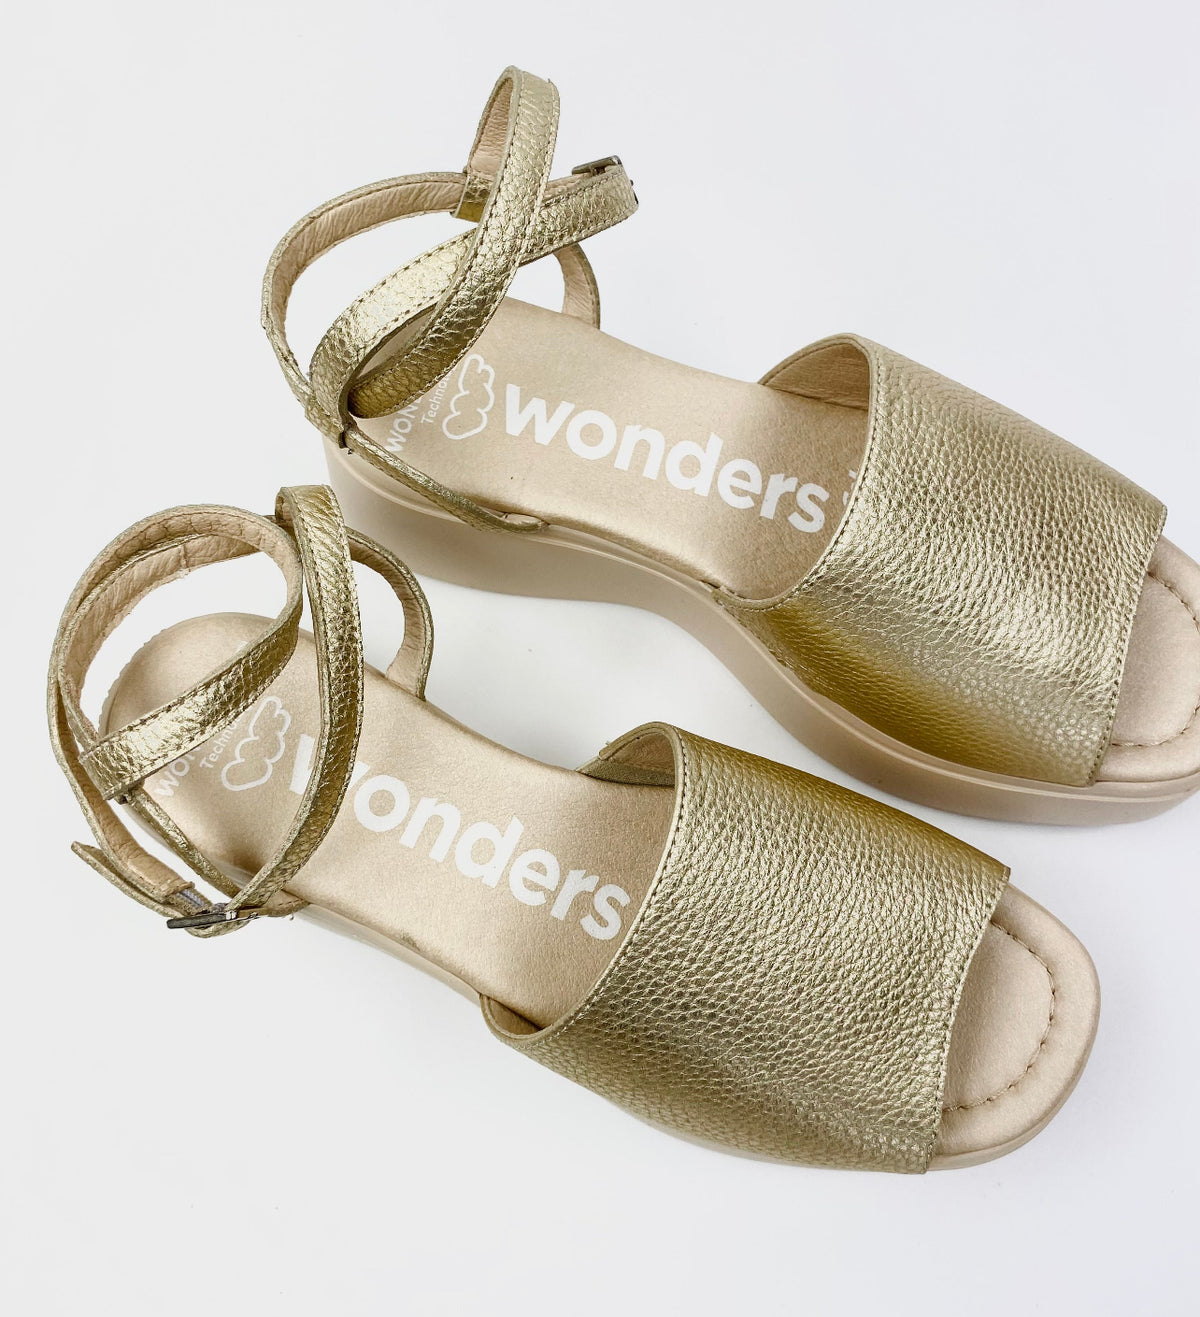 Wonders - A-3705 Gold Platform Sandal